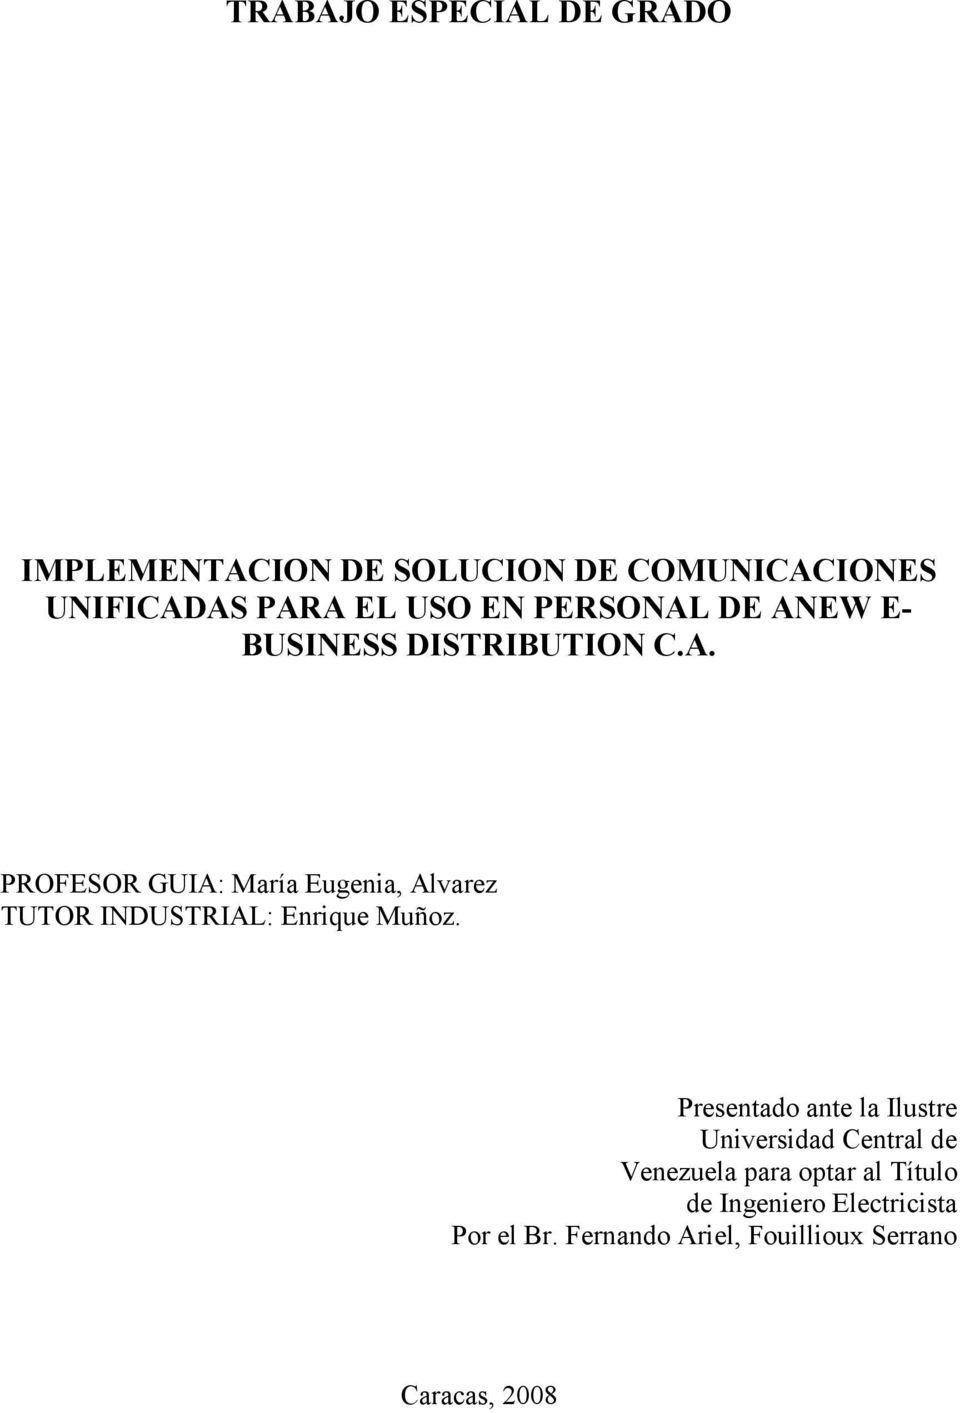 Presentado ante la Ilustre Universidad Central de Venezuela para optar al Título de Ingeniero